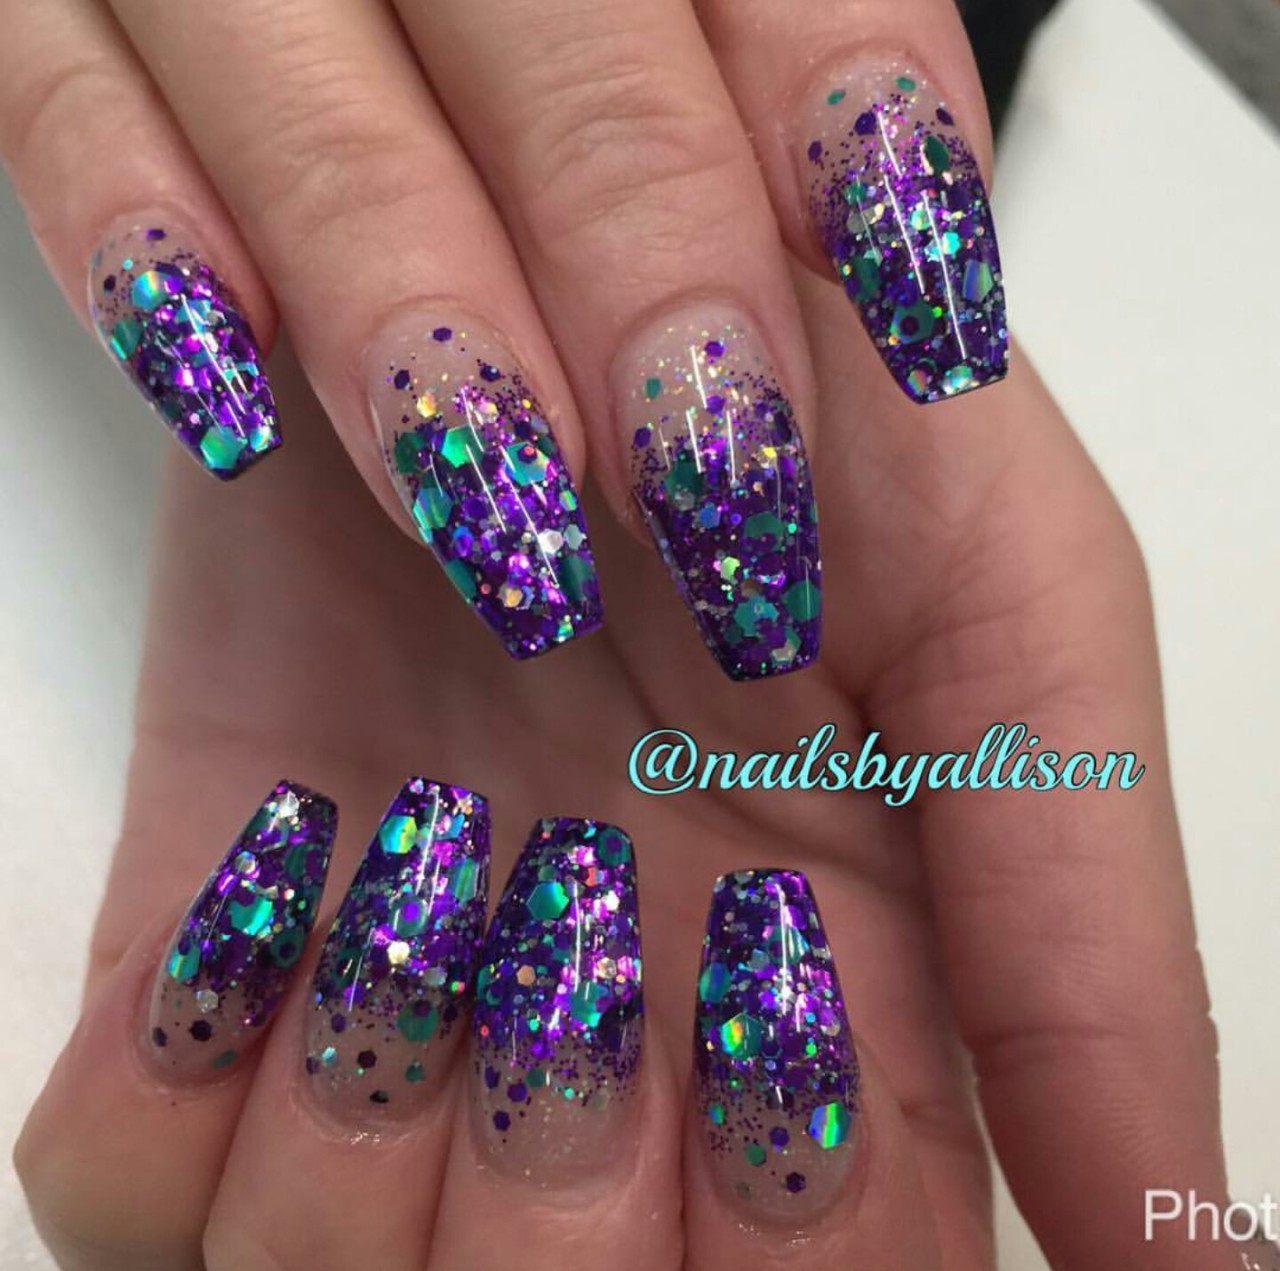 Nails, Nails, Nails — Purple Glitter Tips . 💜💙💚